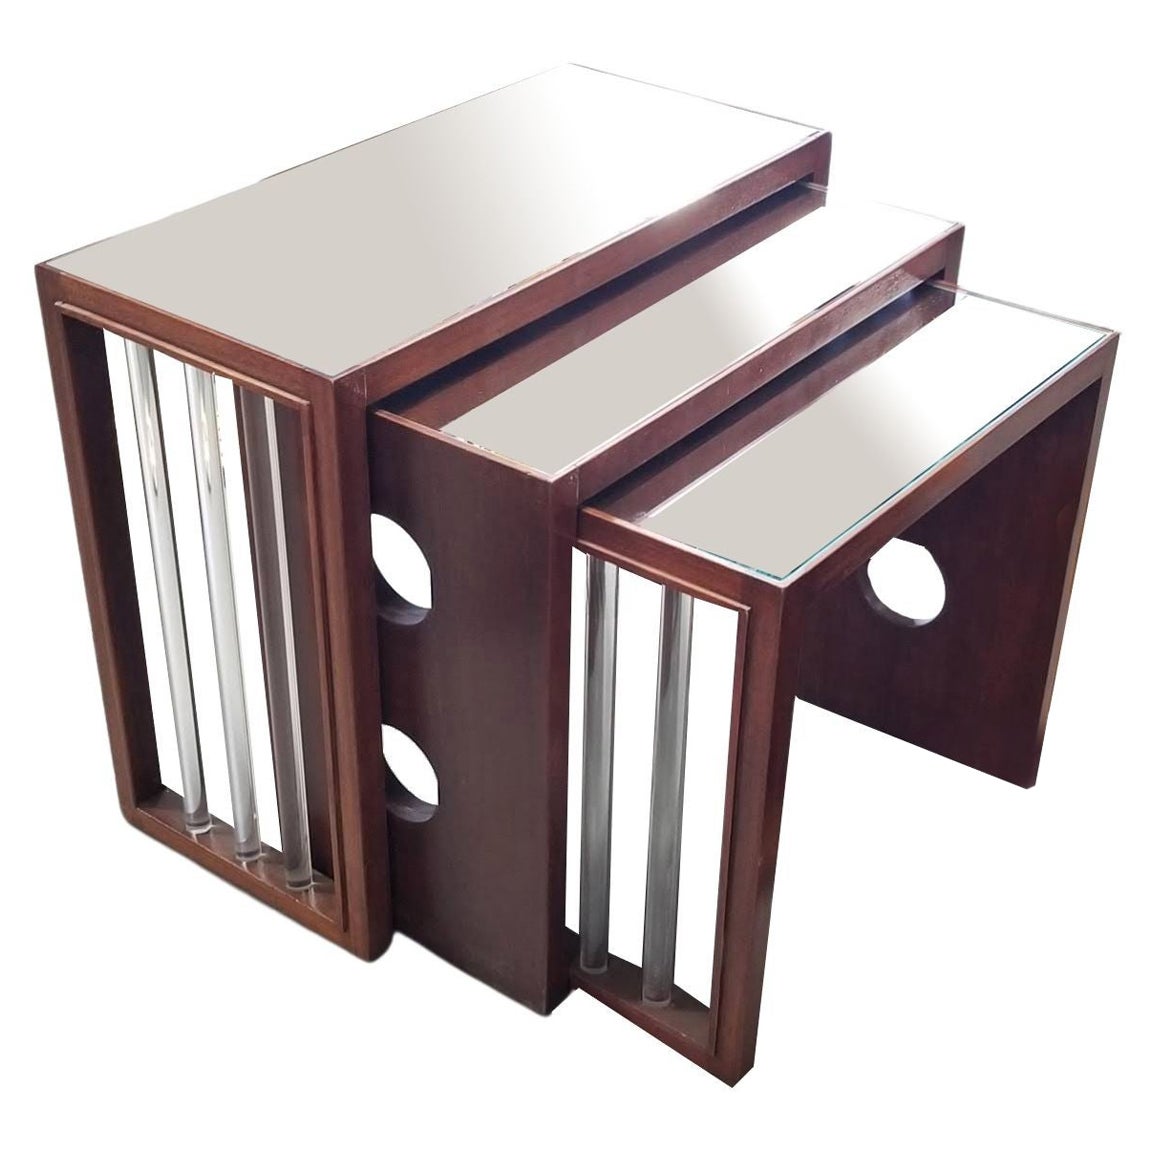 Vintage Art Deco James Mont style Nesting Tables For Sale